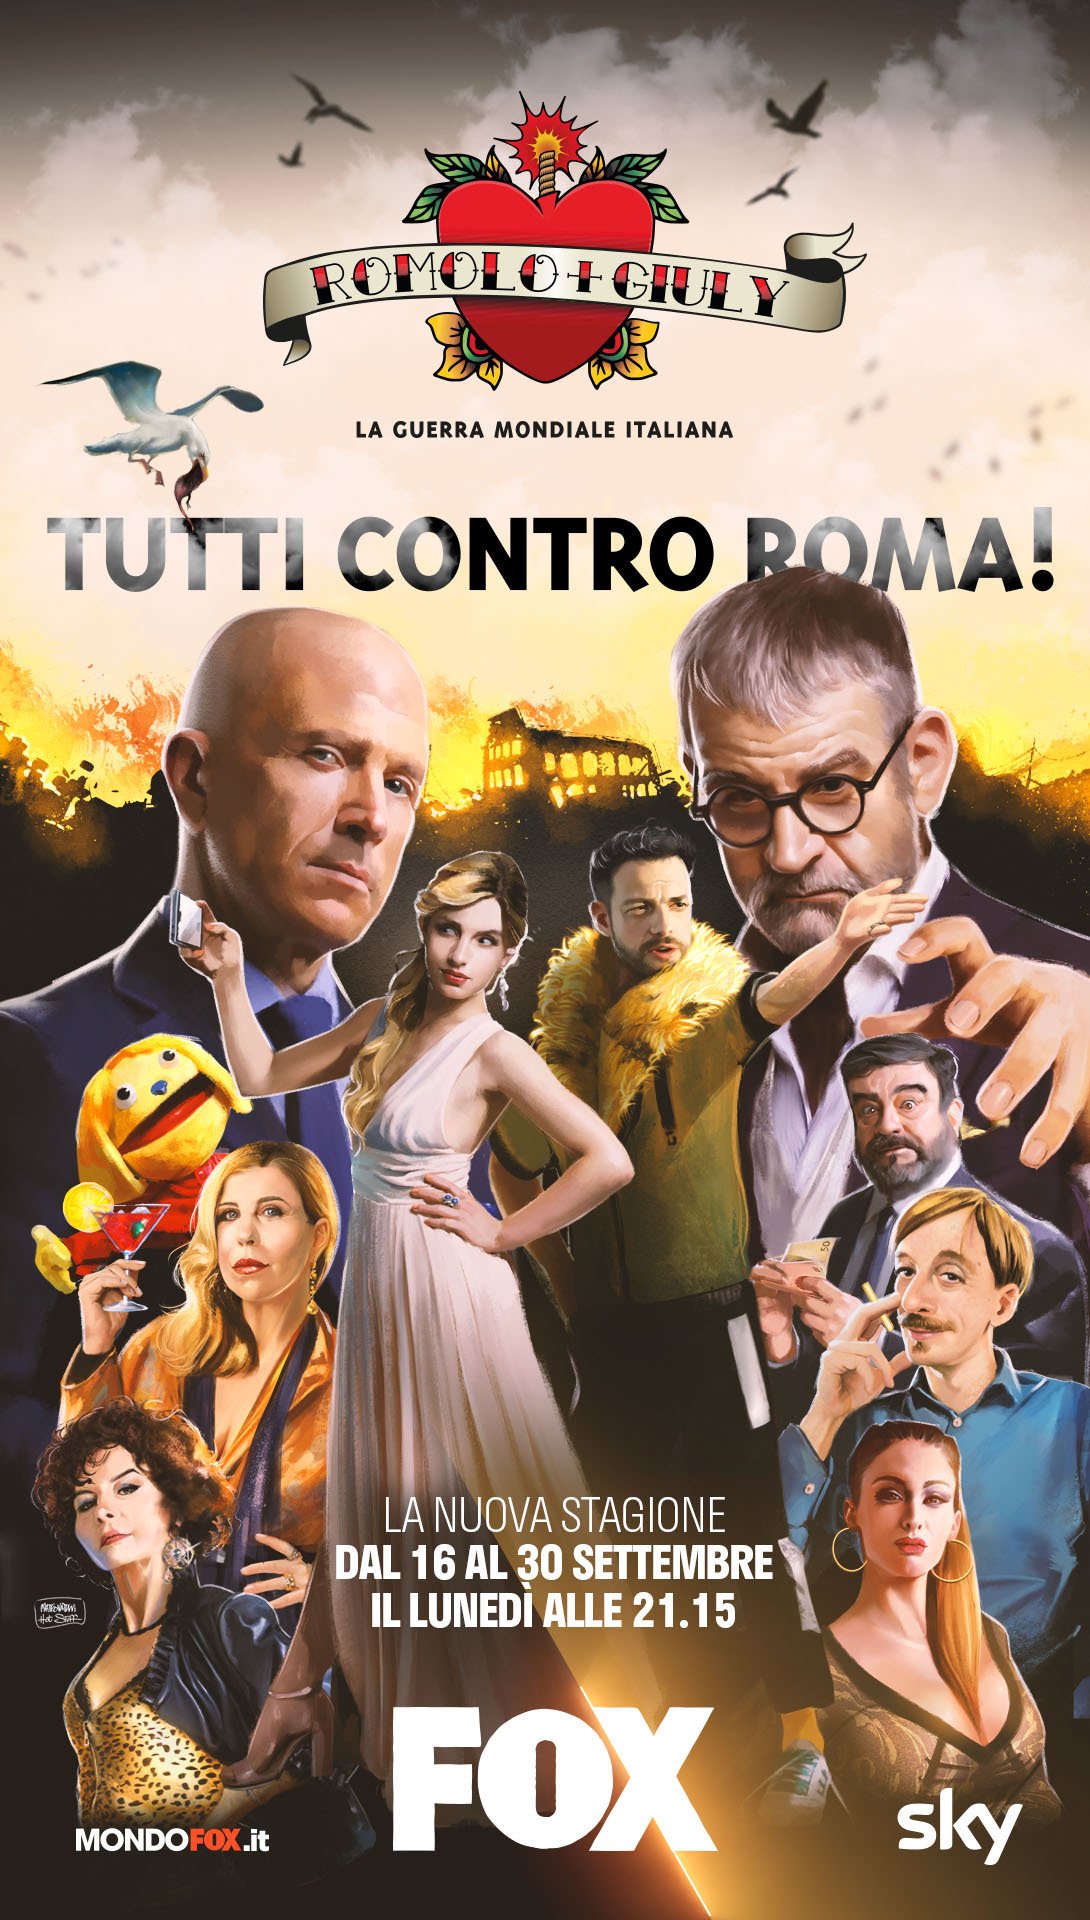 Il poster per la seconda stagione di Romolo e Giuly: la guerra mondiale italiana